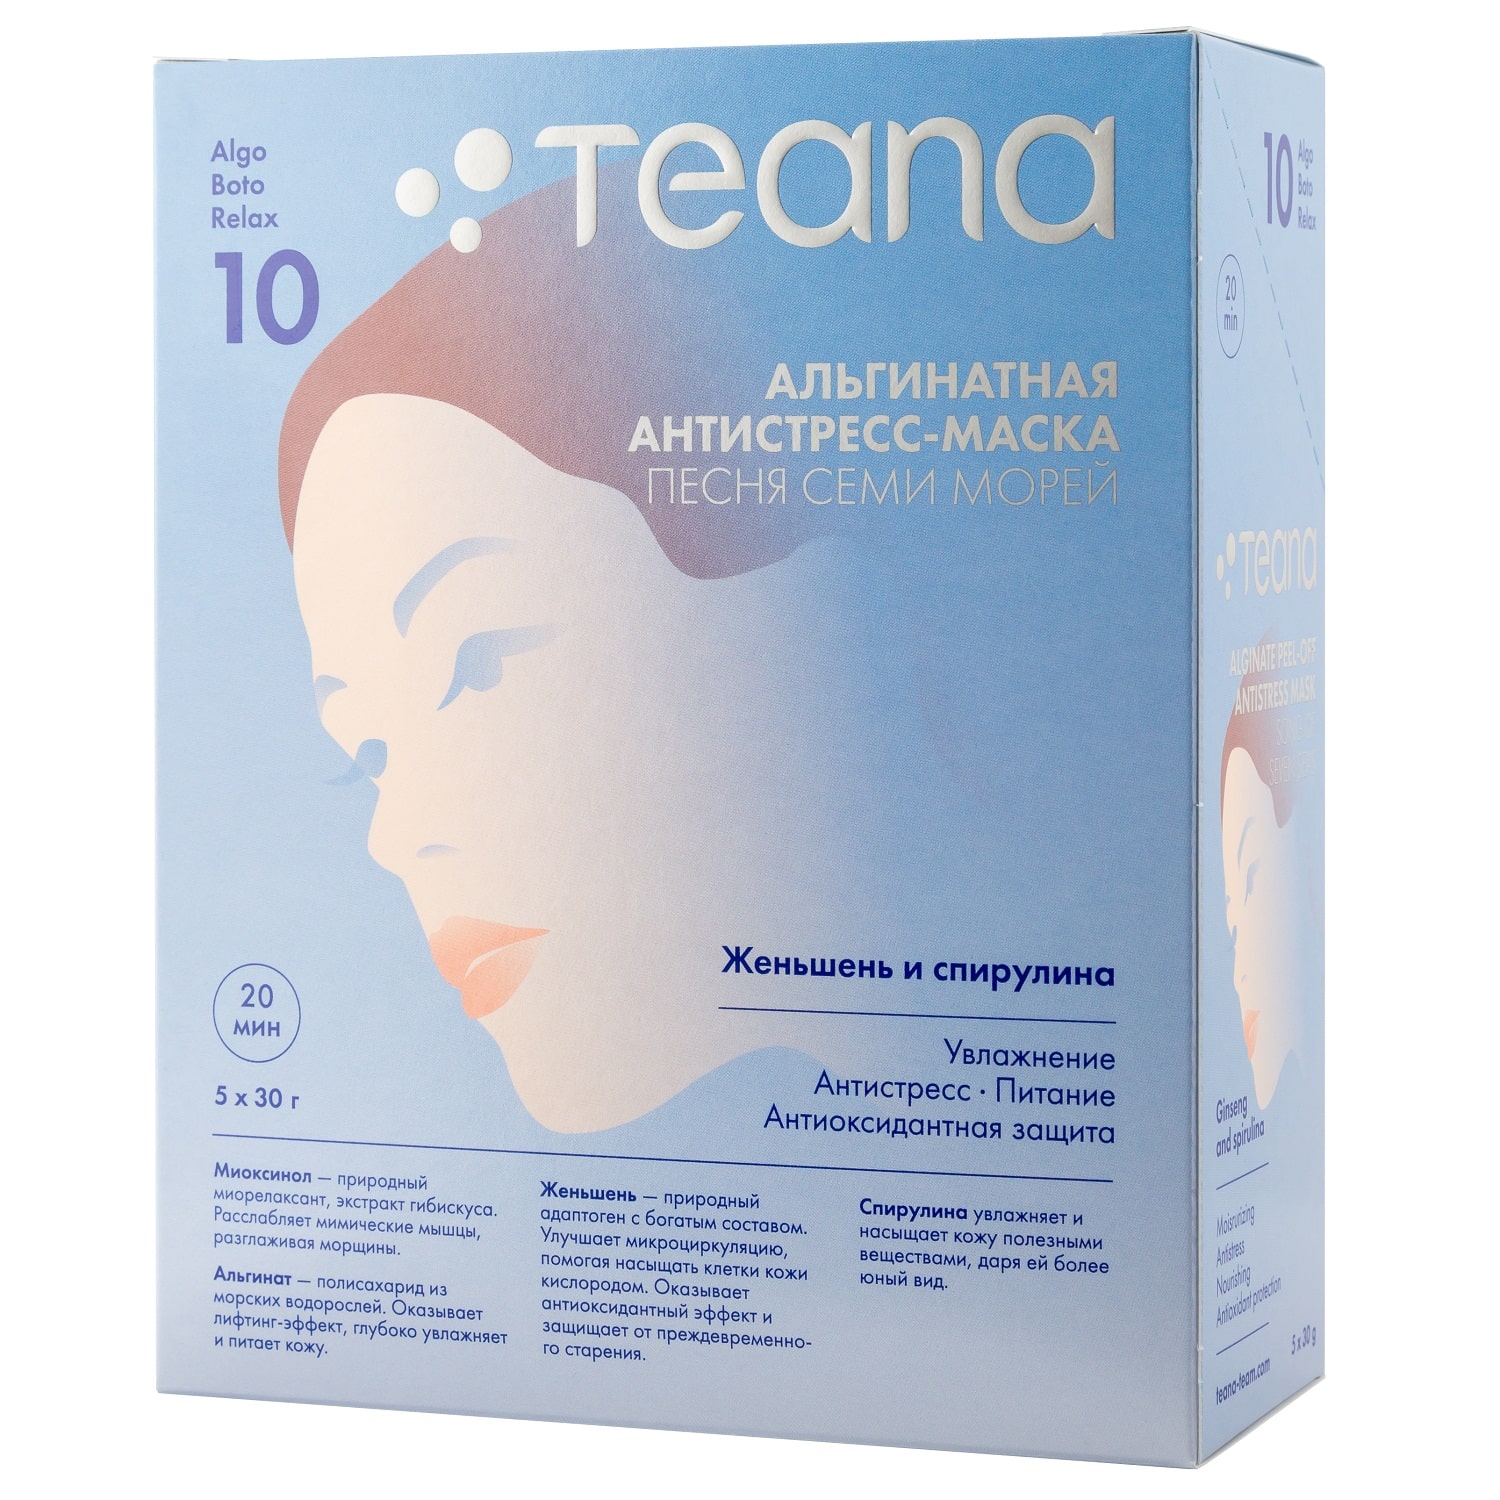 Teana Альгинатная Энергетическая, тонизирующая маска для уставшей кожи «Песня семи морей» 30х5 гр (Teana, AlgoBotoRelax)